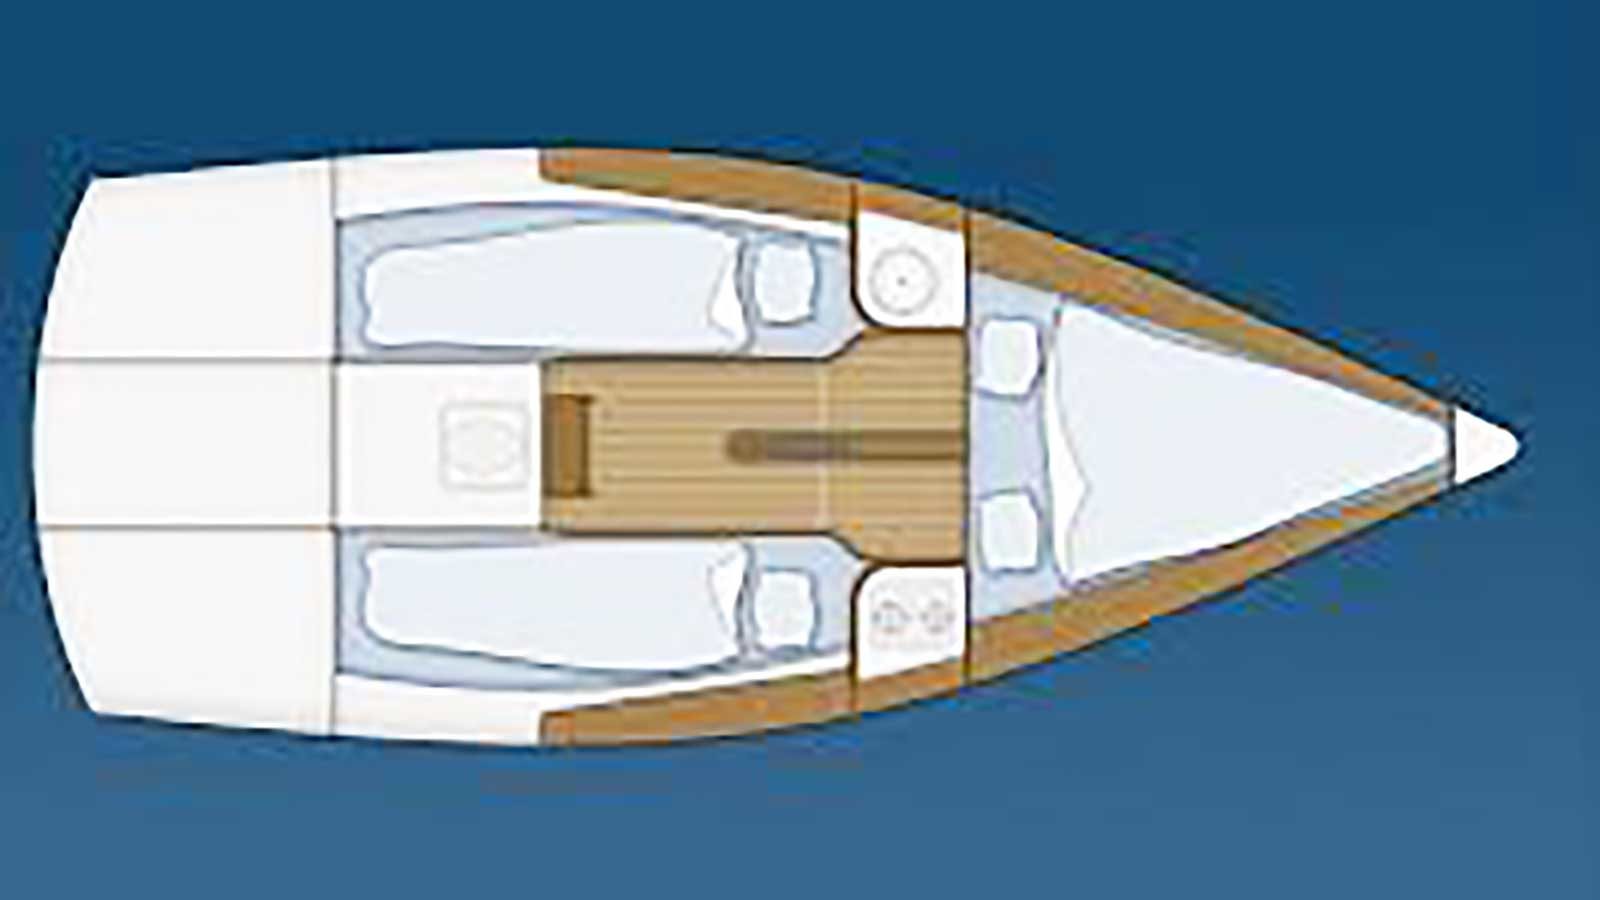 Mariner 20: Bootsskizze von oben